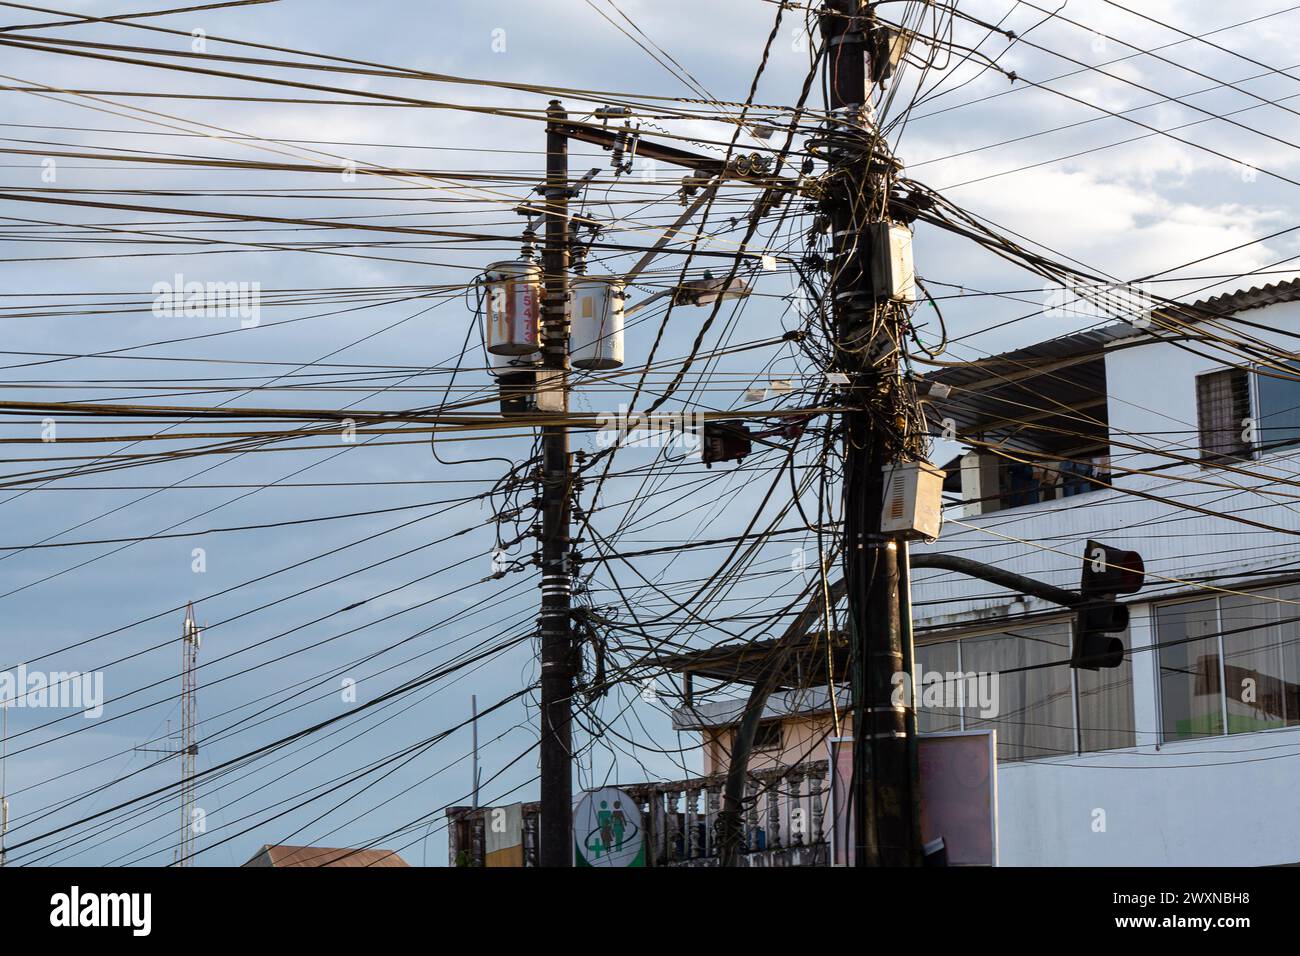 Ein verworrenes Netz von Elektrodrähten krönt einen städtischen Pol und zeigt die komplexe und chaotische Energieinfrastruktur der Stadt Stockfoto